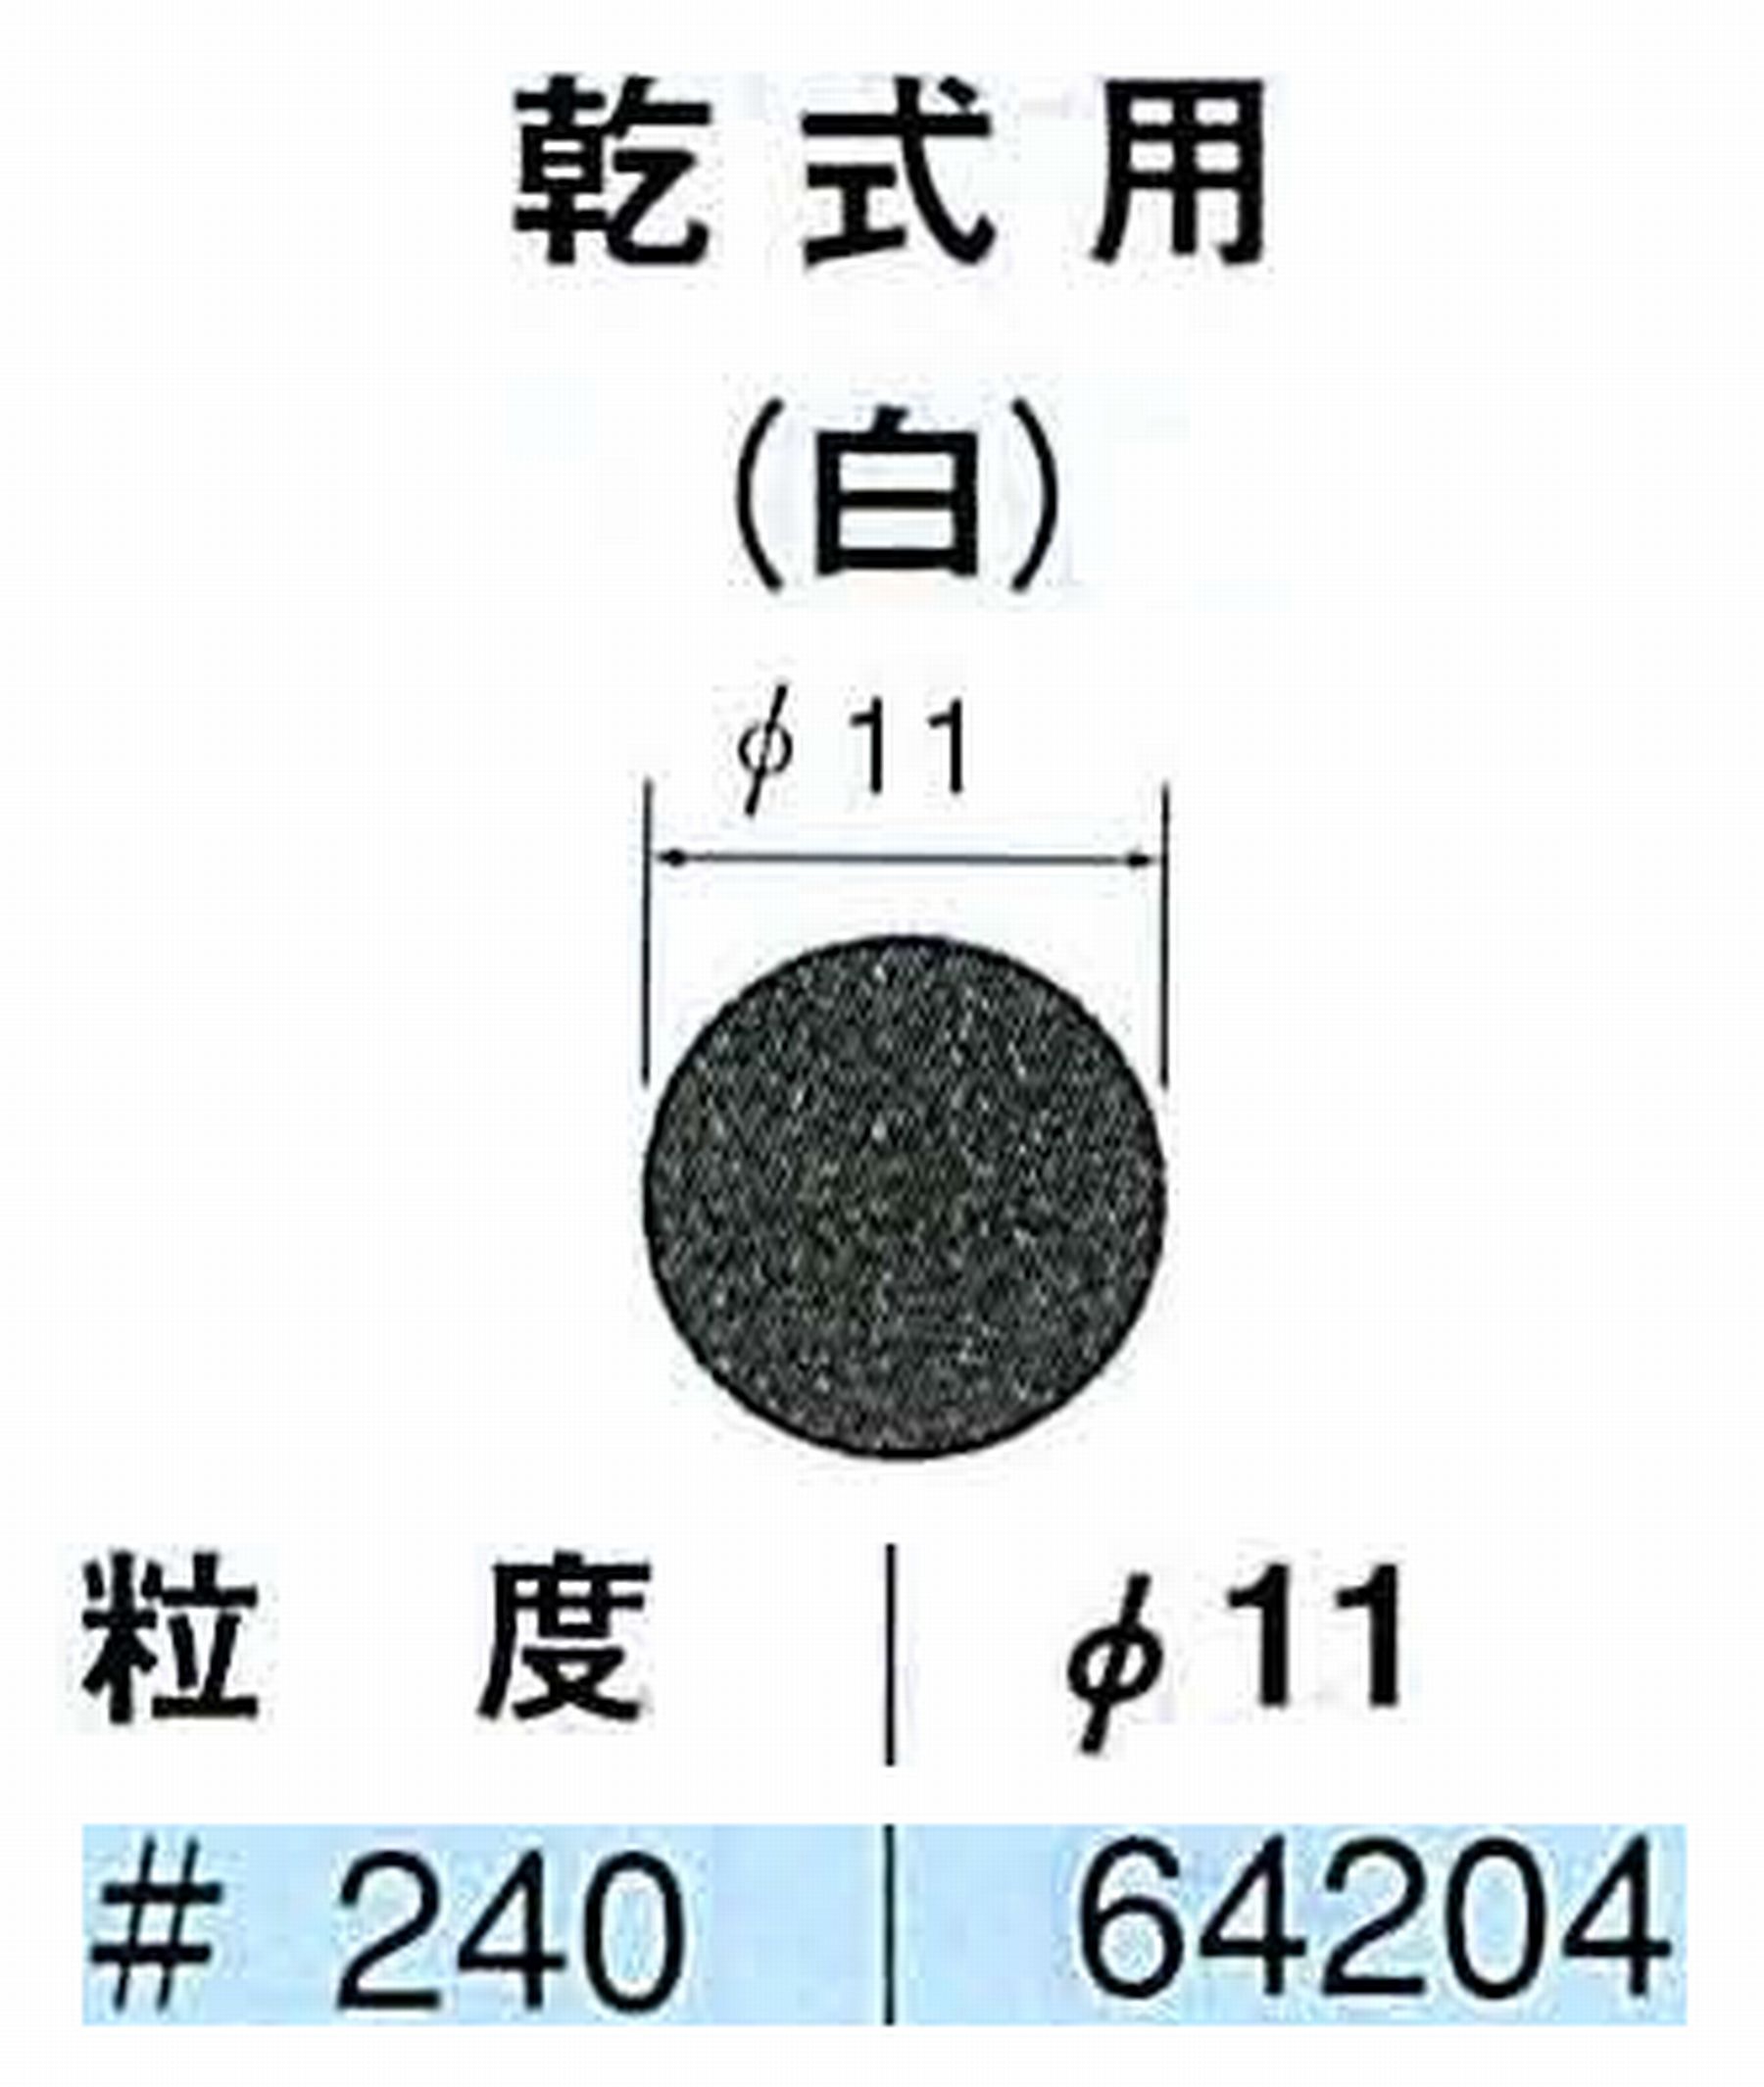 ナカニシ/NAKANISHI アングルグラインダ(電動・エアー) アングルアタッチメント専用工具 サンドペーパーディスク(紙基材タイプ)裏面のり処理 64204